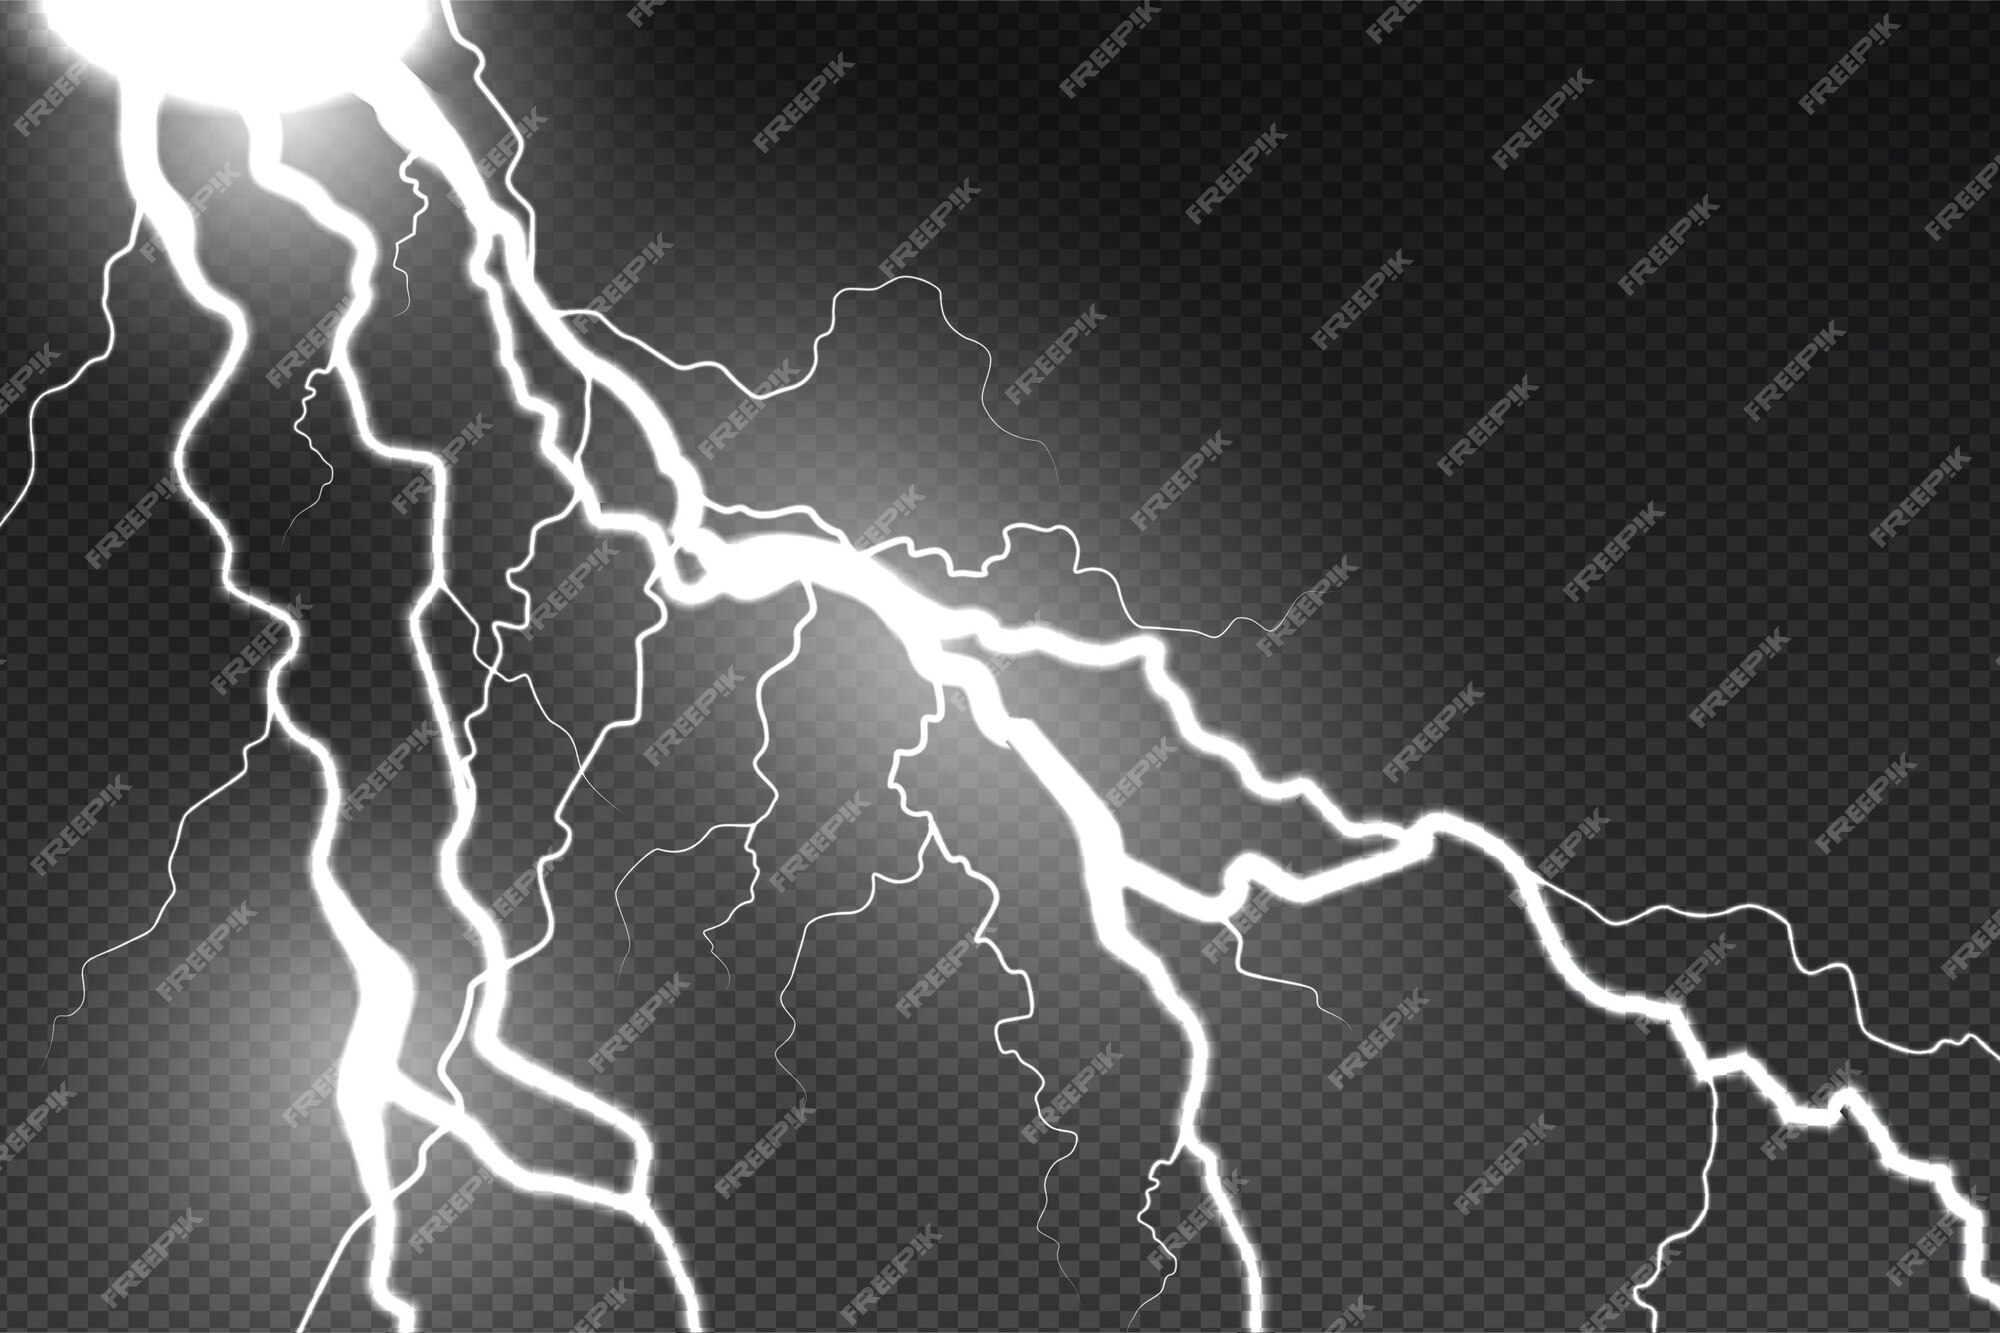 White Lightning Images - Free Download on Freepik